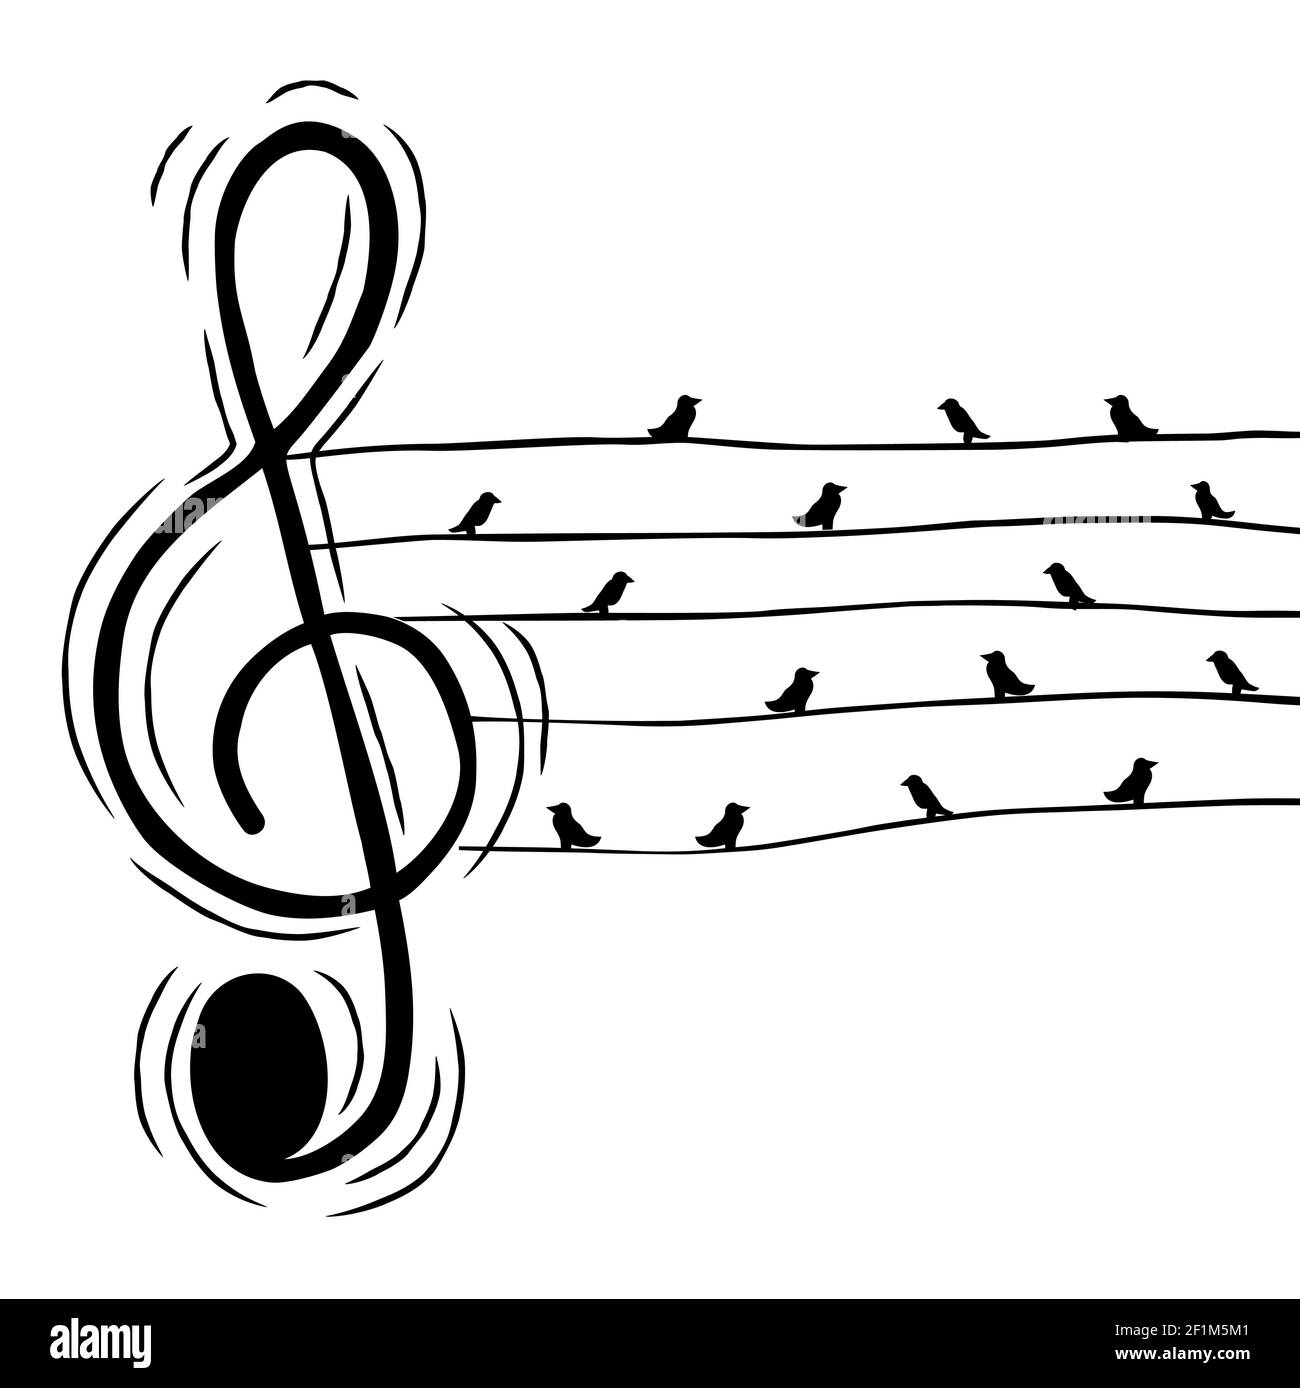 Note d'aigus musicaux avec illustration d'oiseaux en fil métallique pour un événement musical ou un concept de son nature. Dessin animé à la main sur un arrière-plan isolé. Illustration de Vecteur